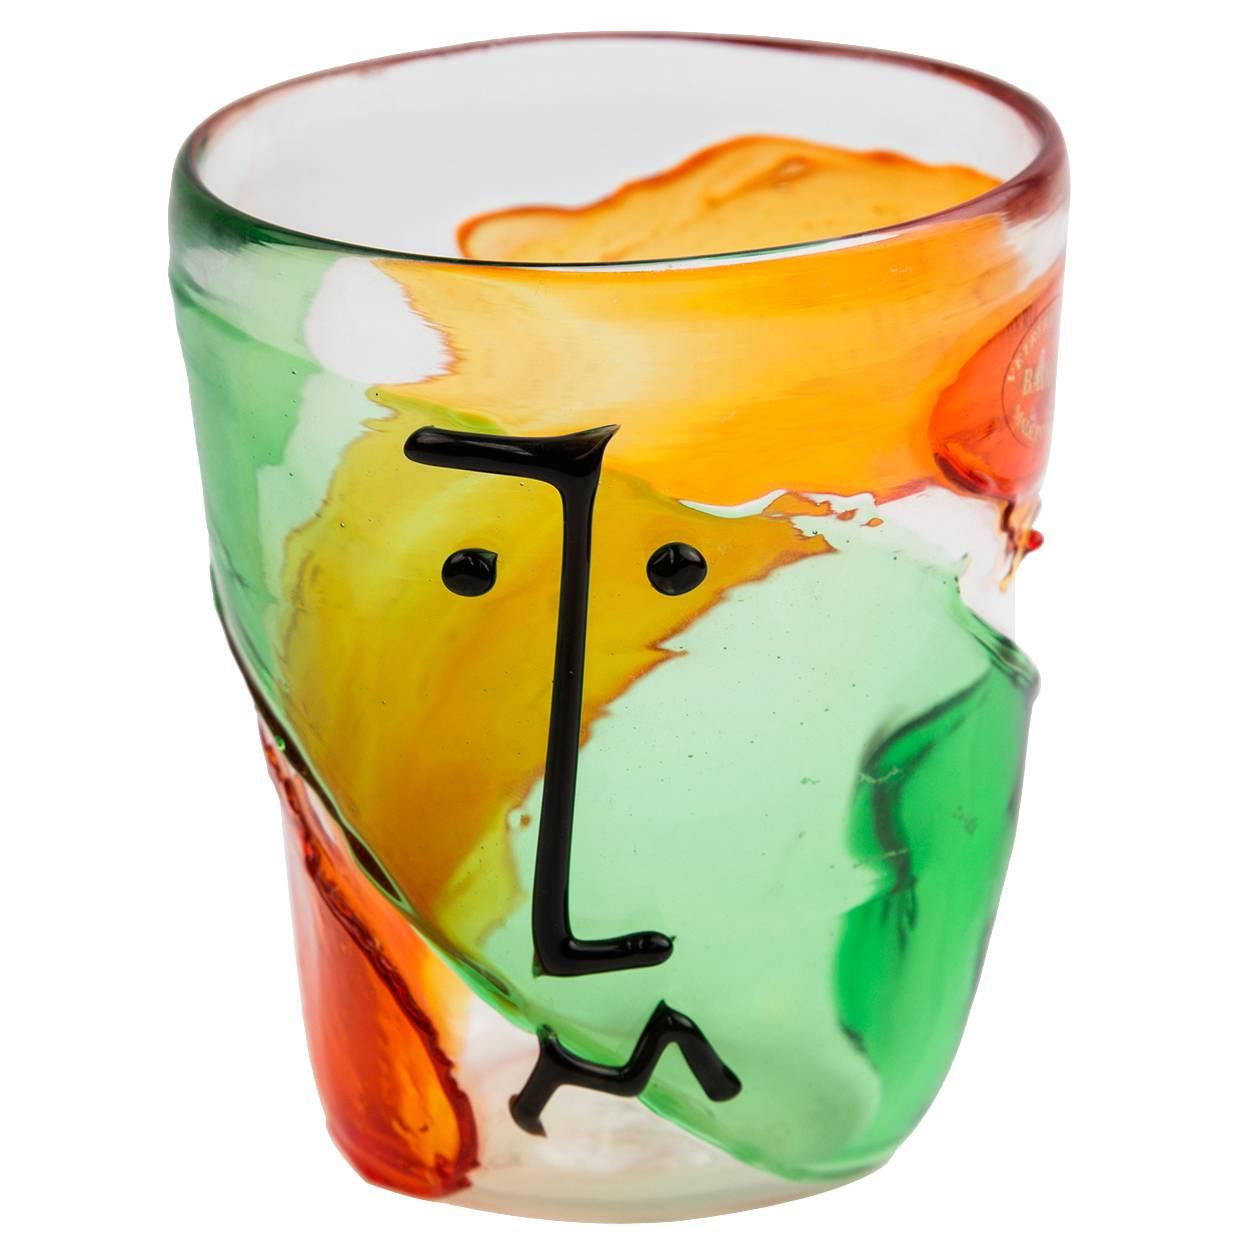 Vieux vase Badioli en verre de Murano multicolore avec visage abstrait de style Picasso